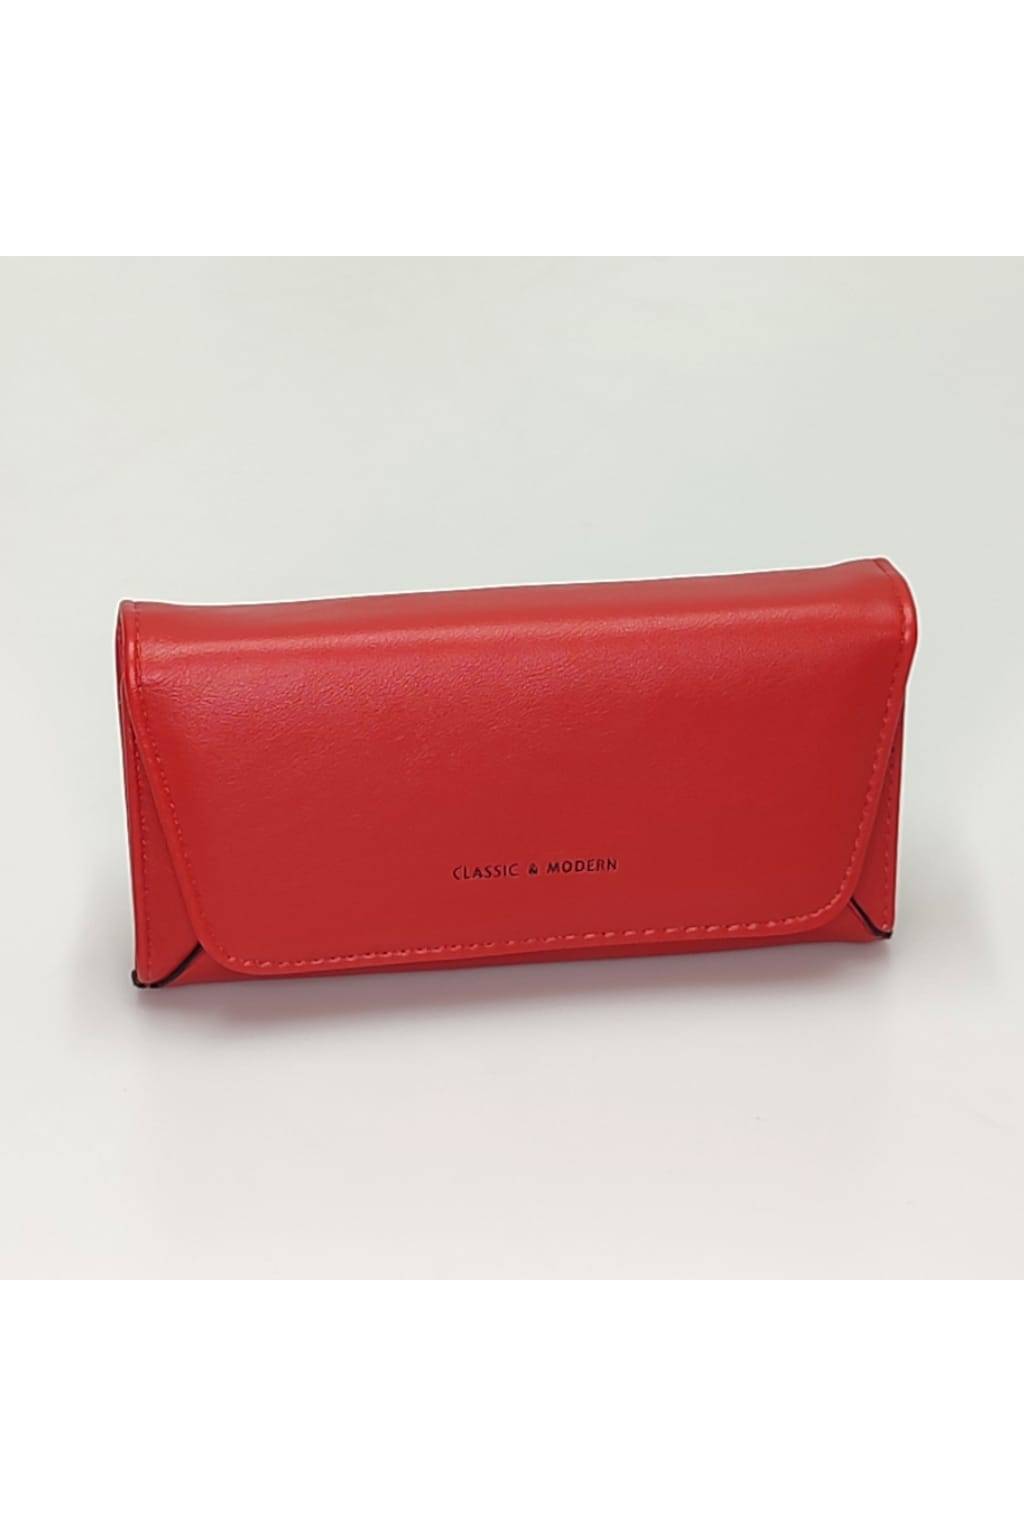 Dámska peňaženka ZY 21596 červená www.kabelky vypredaj (2)